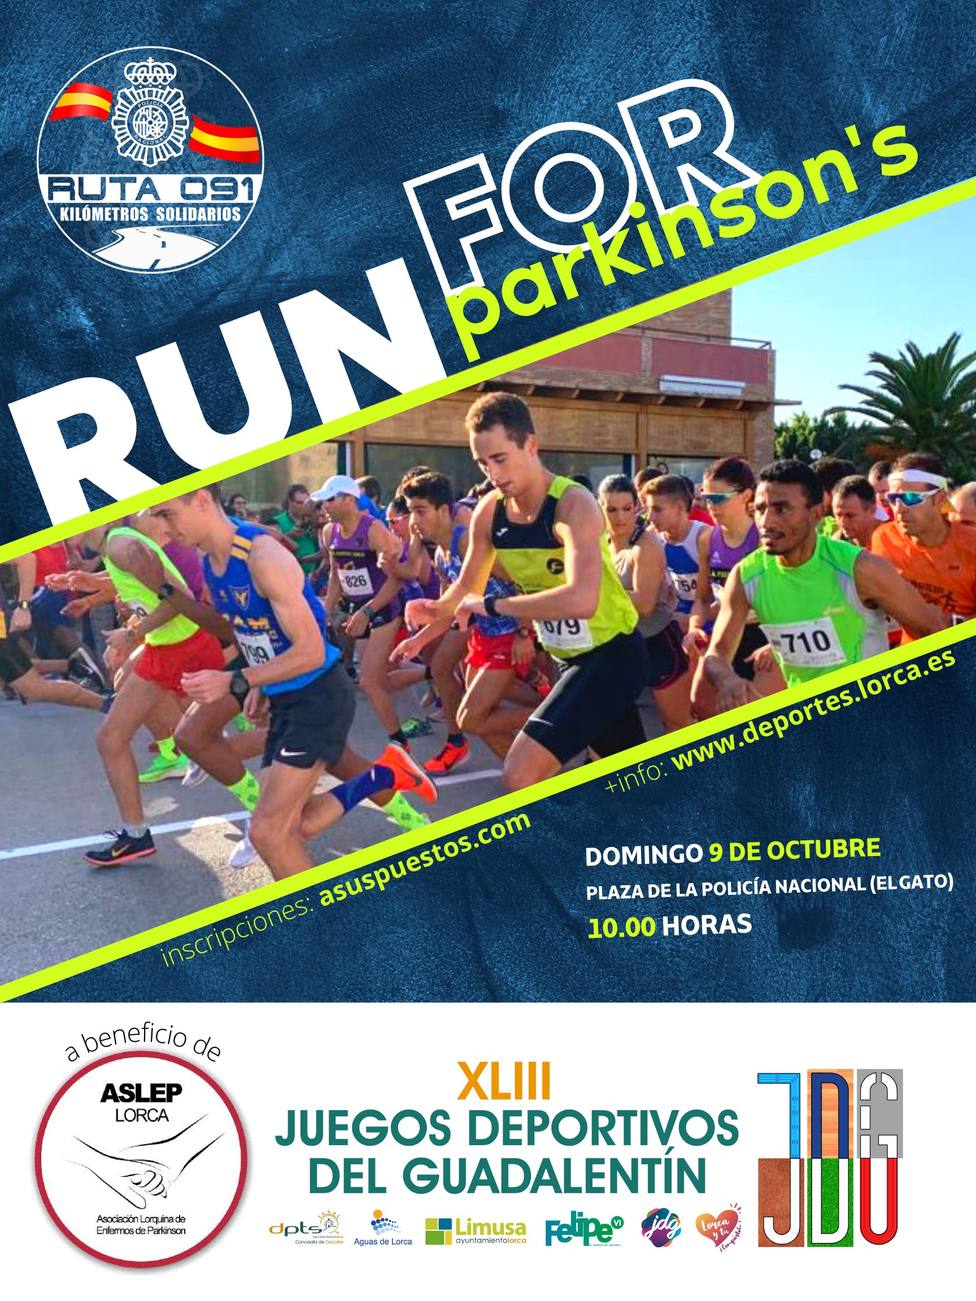 Lorca acoge una nueva edición de la carrera solidaria ‘Run for Parkinson’s’ incluida en la Ruta 091 de Policía